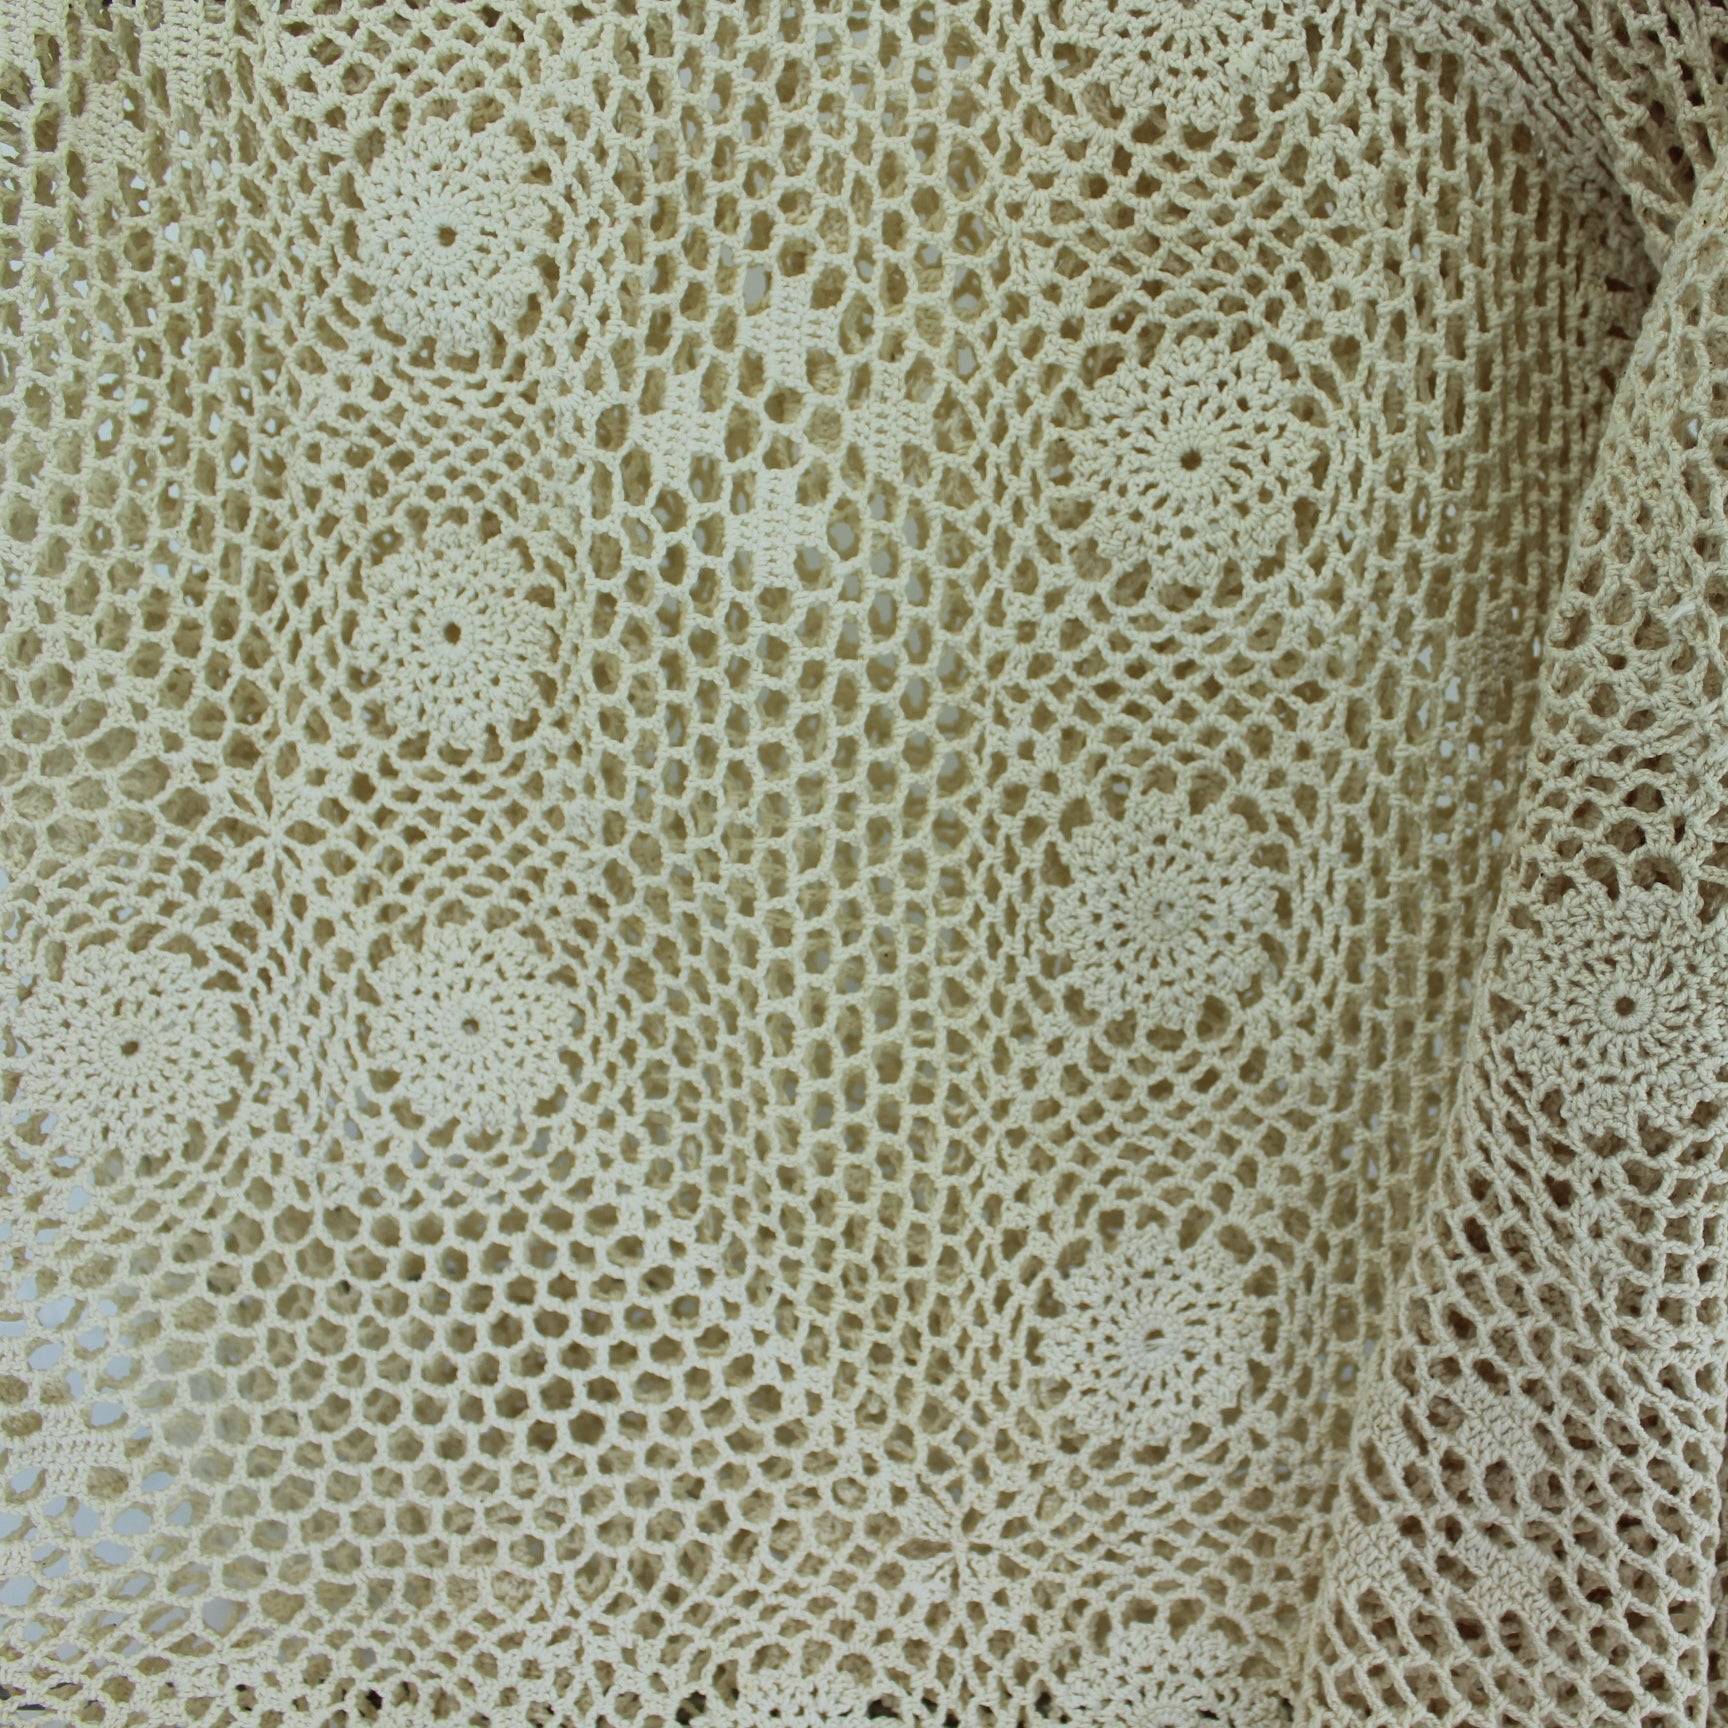 Pair Crochet Doilies Tablecloths Ecru Heavy Cotton 32" Round 36" Square closeup of square piece